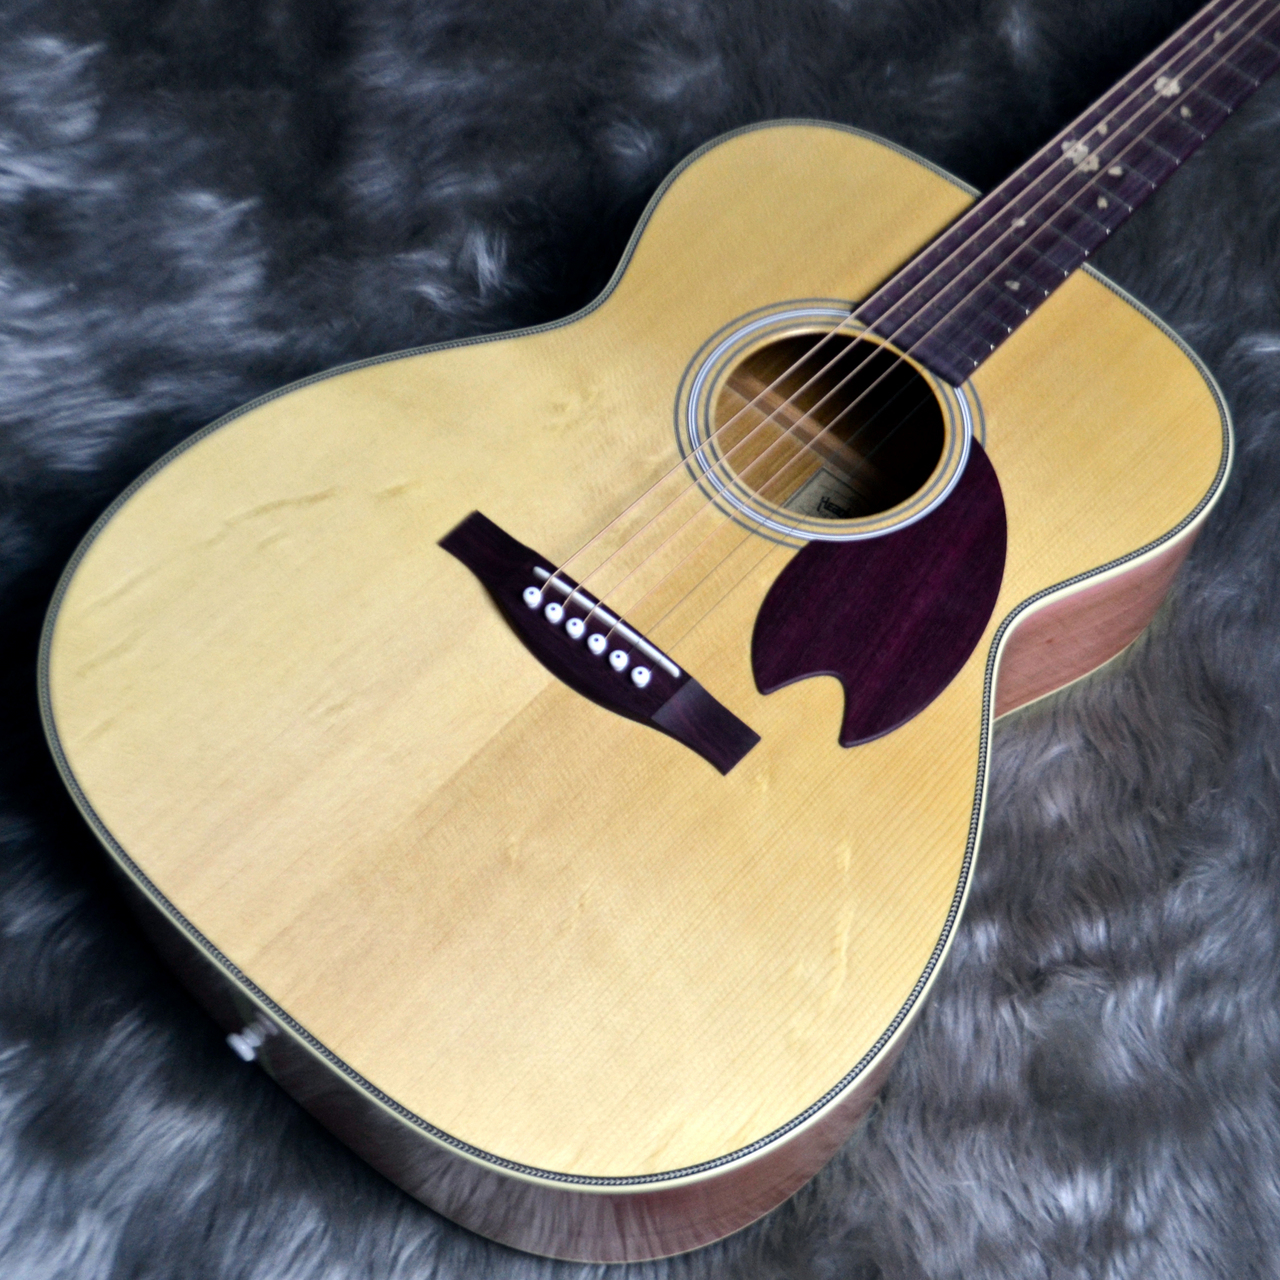 〈アコースティックギター〉桜材が使用され可愛らしく華やかなデザインの「Headway HOM-SAKURA D,A,S/STD」